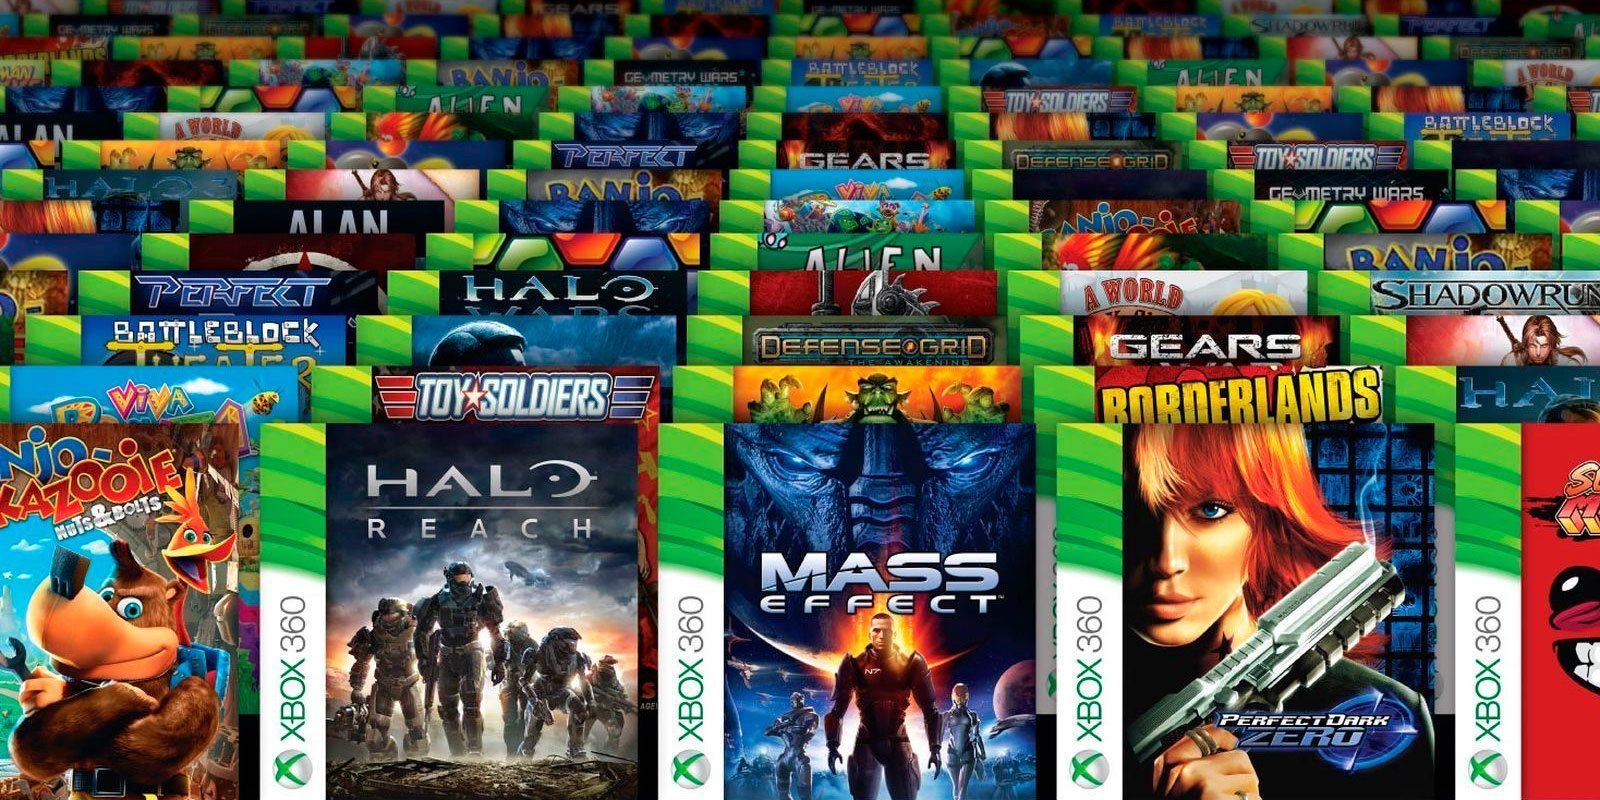 La retrocompatibilidad de Xbox ya supera los mil millones de horas jugadas